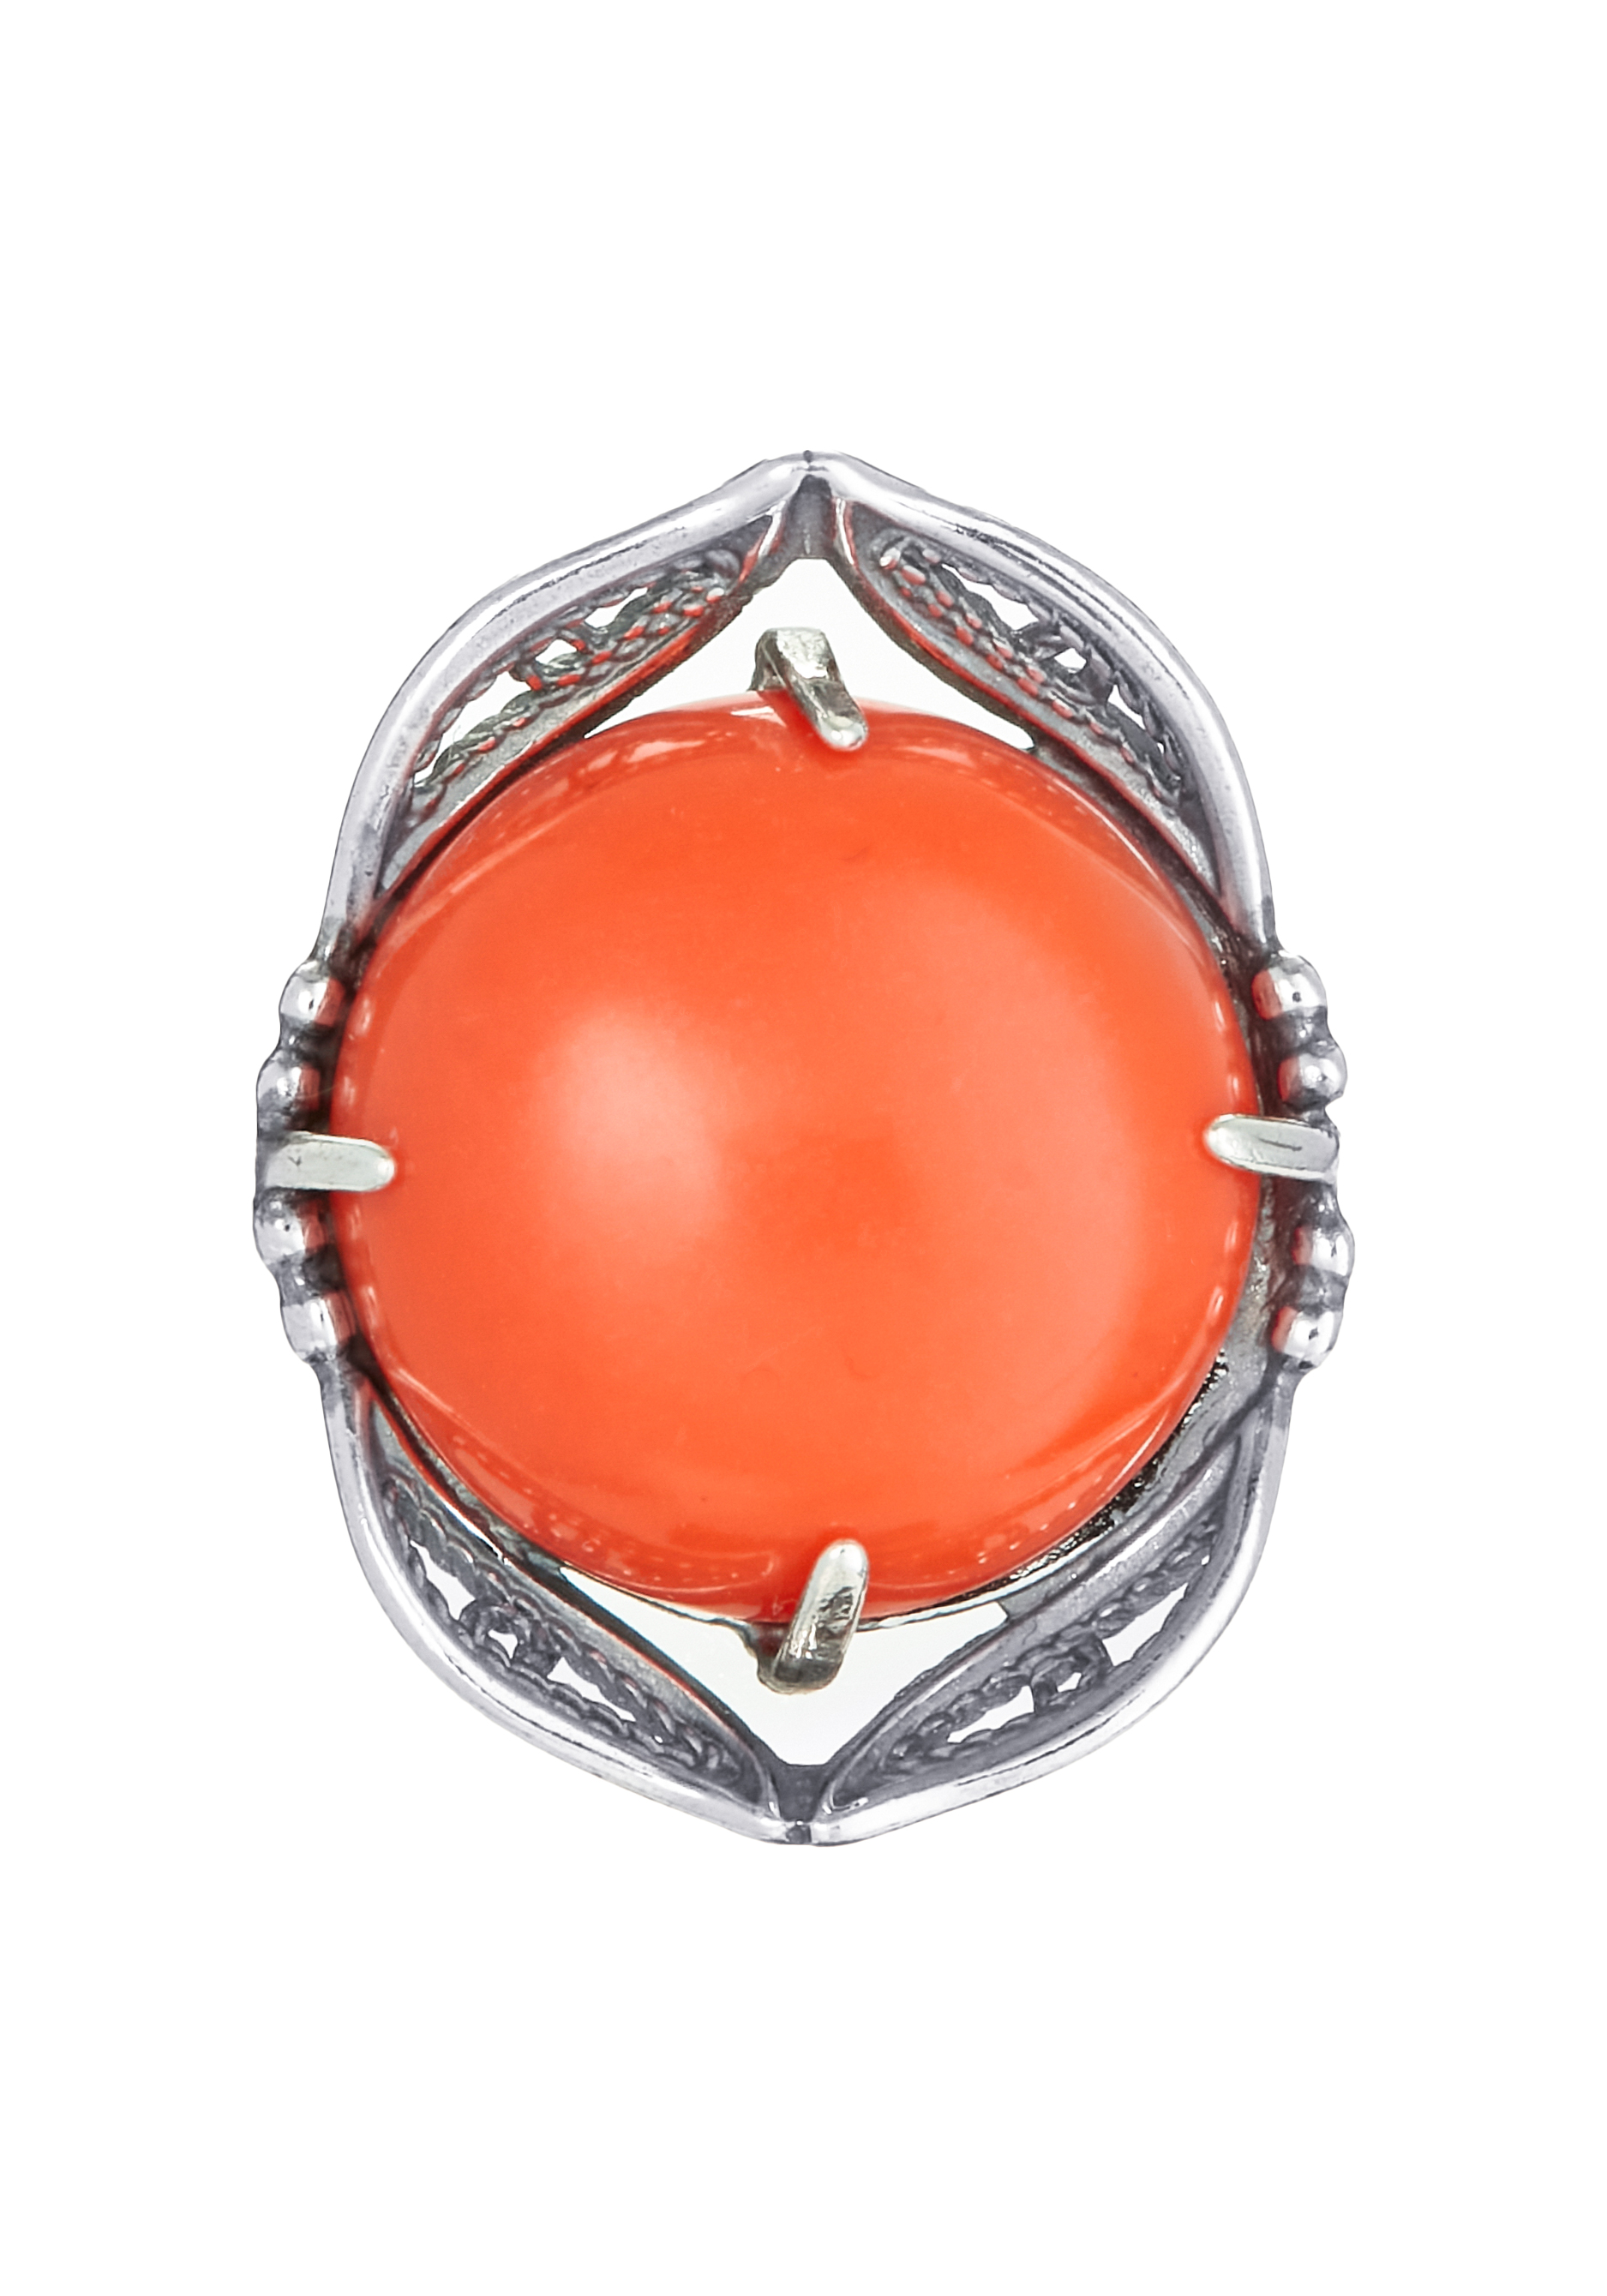 Комплект «Древний эпос» Silver Star, цвет оранжевый, размер 18 перстень - фото 5